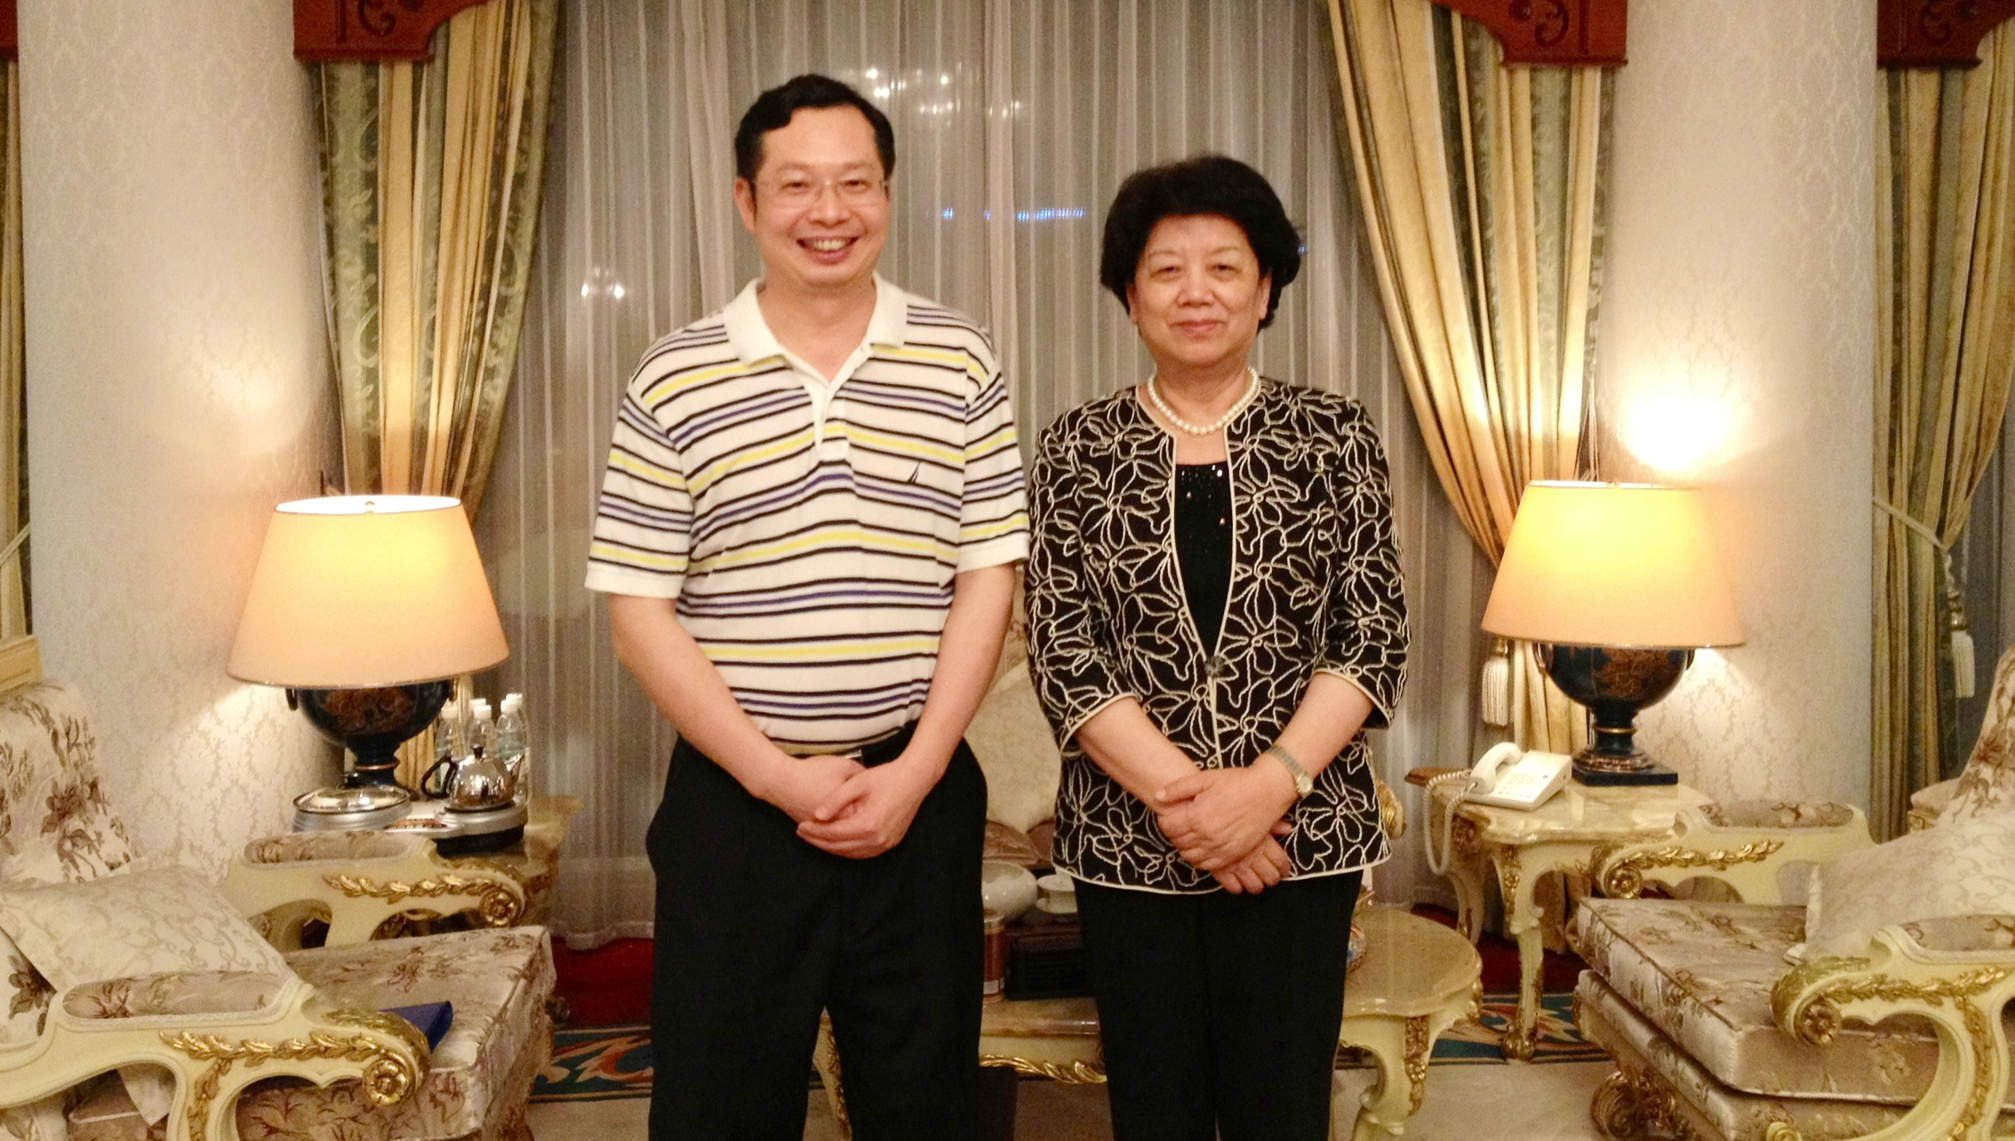 2012年6月17日全国人大副委员长陈至立亲切会见苏庆灿董事长，她对厦门眼科中心所取得的成绩及发展表示高度赞赏